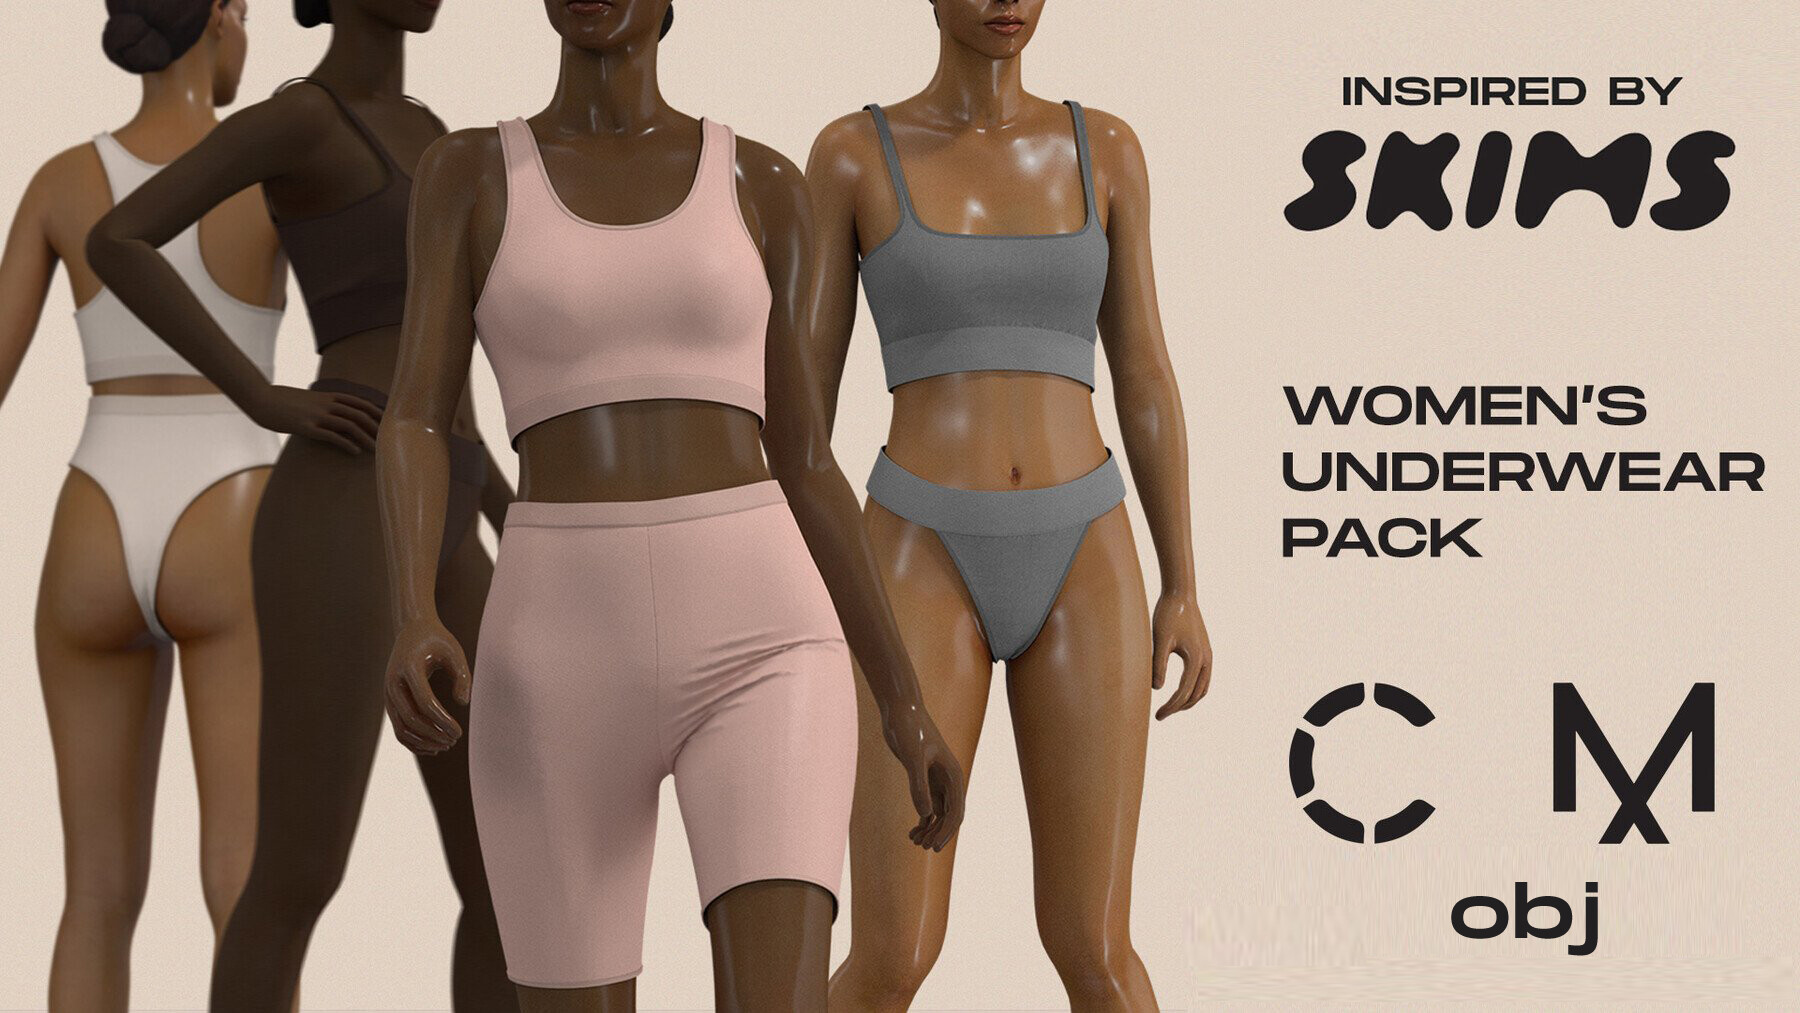 Women's underwear pack (like skims). MD / CLO 3D .zprj projects + .obj